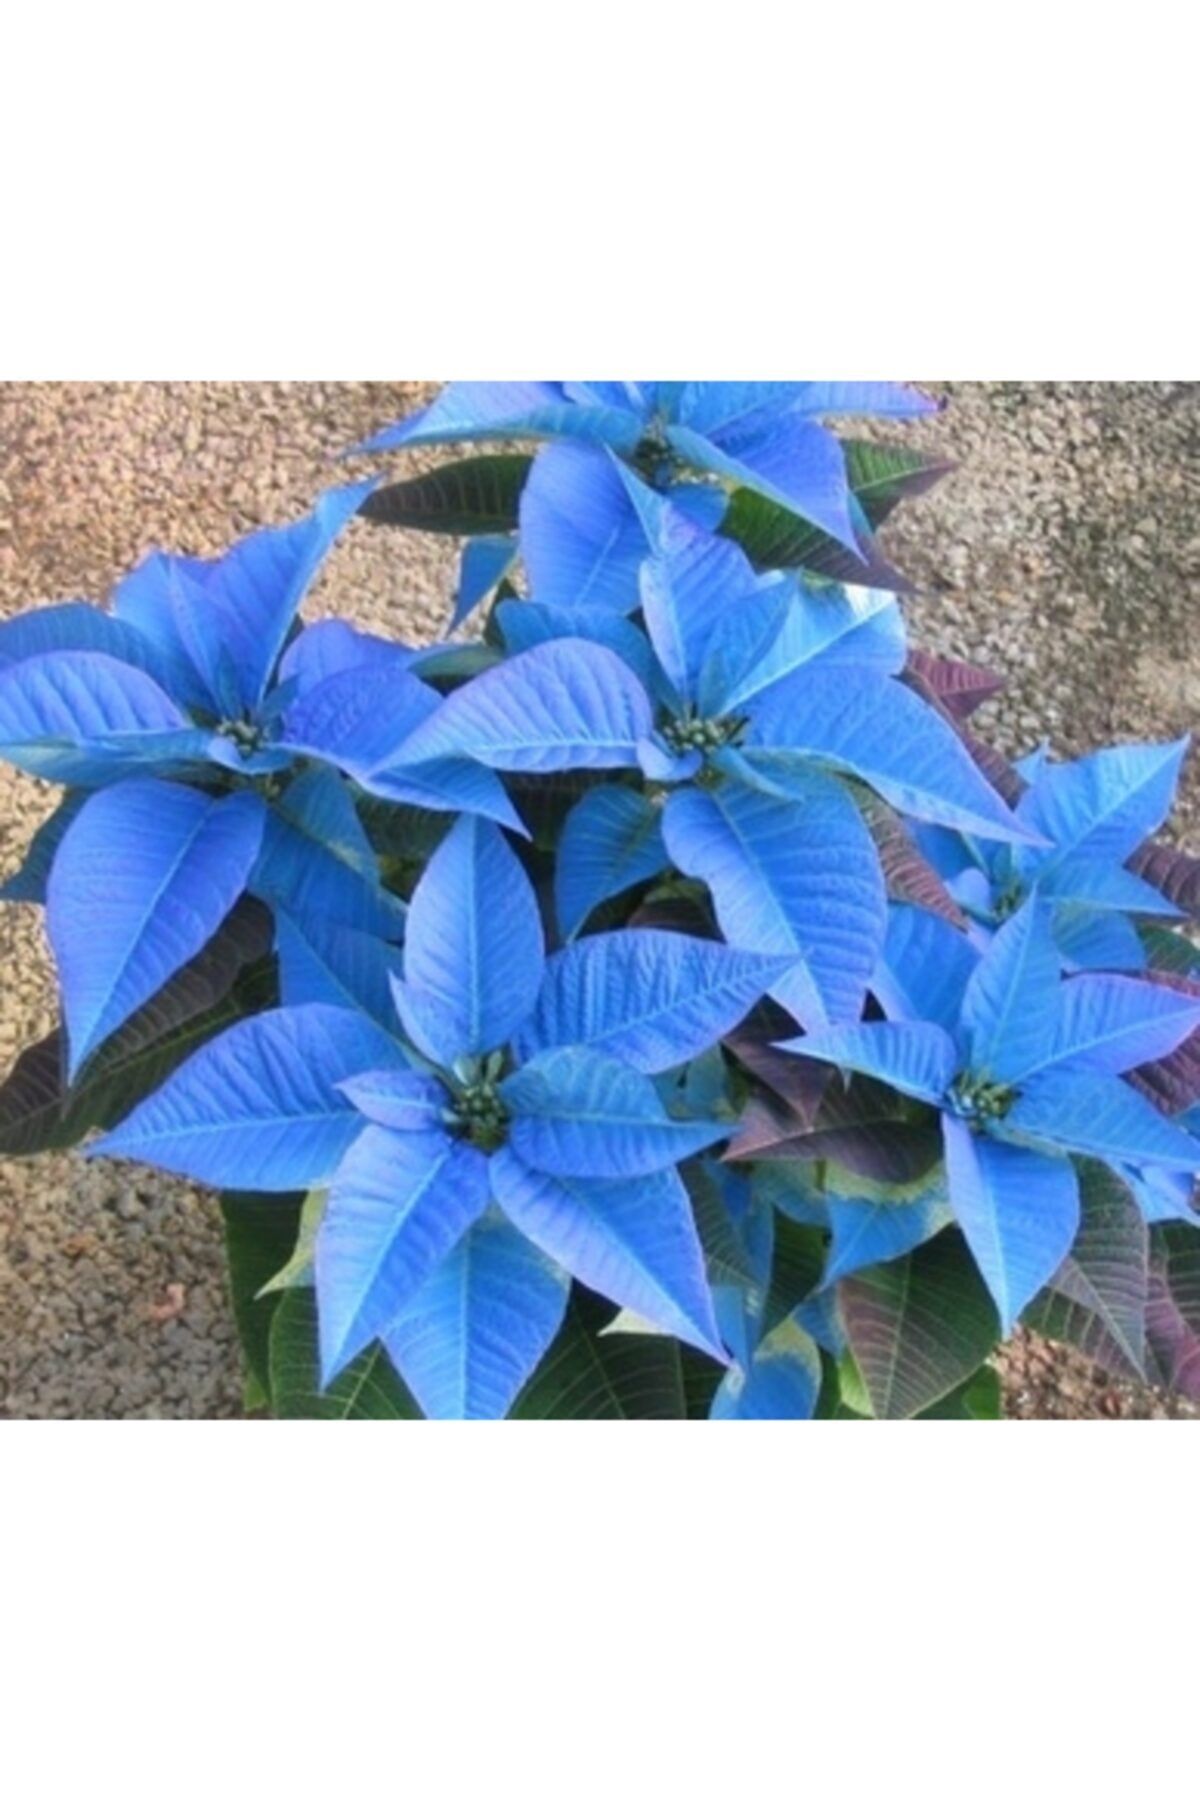 dayou 10 Adet Mavi Atatürk Çiçeği Tohumu + 10 Adet Hediye Karışık Renk Gül Tohumu